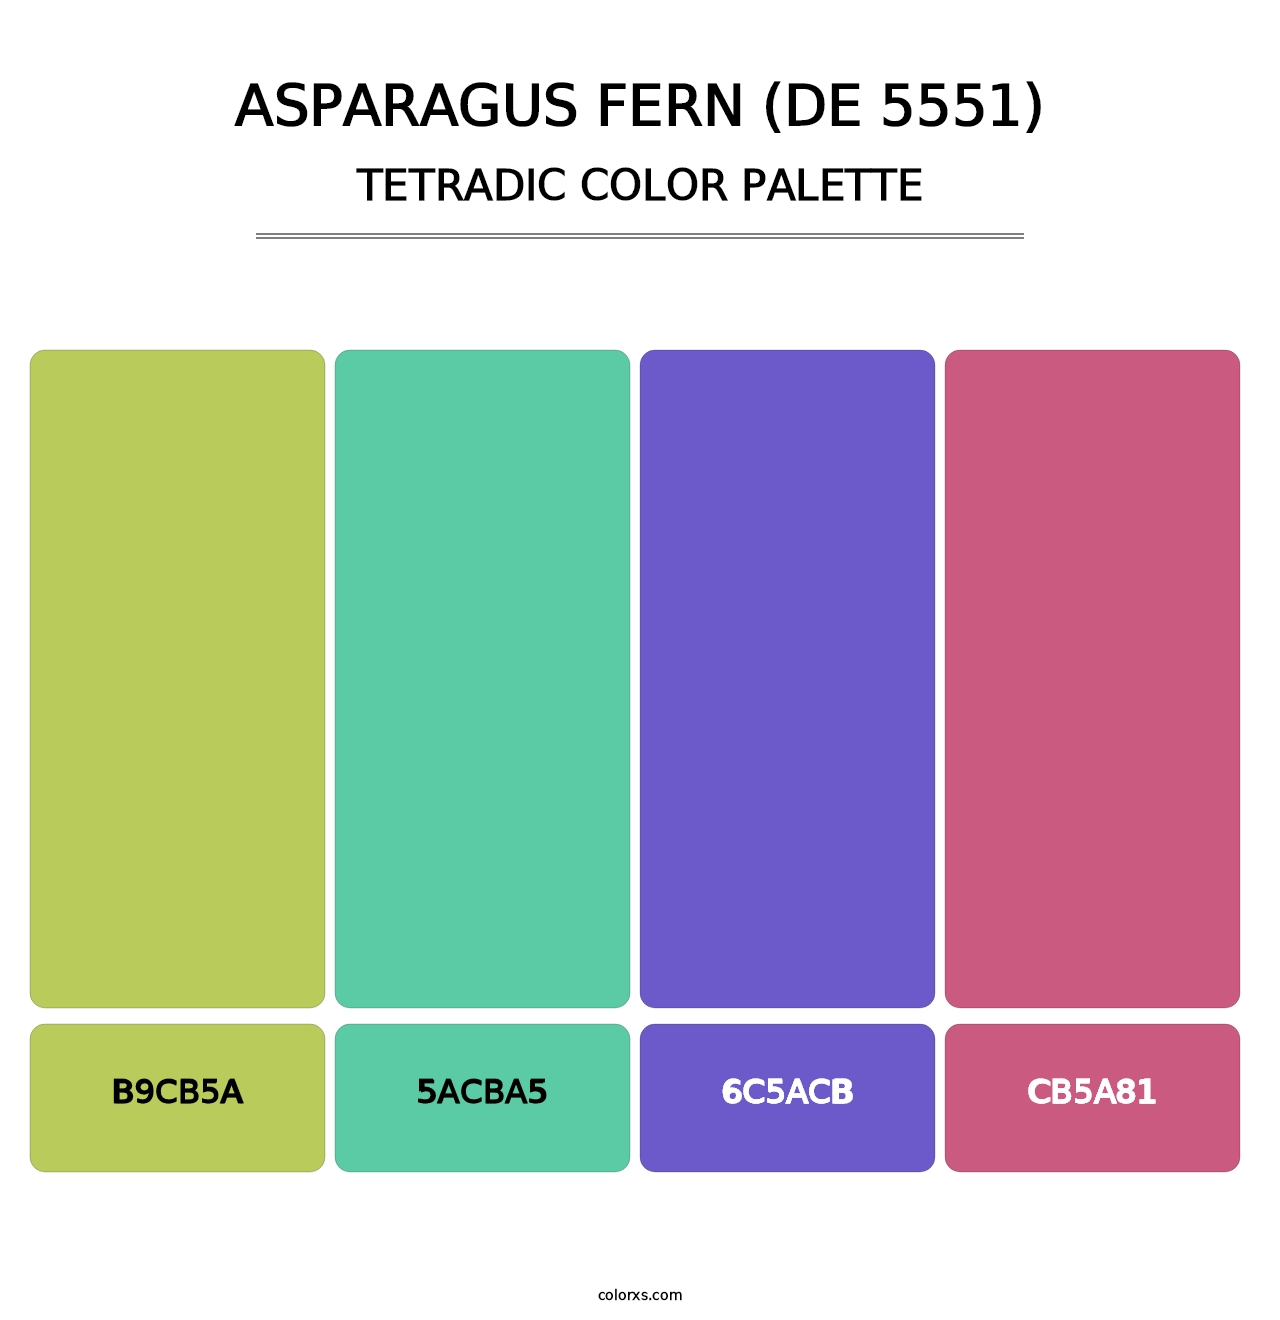 Asparagus Fern (DE 5551) - Tetradic Color Palette